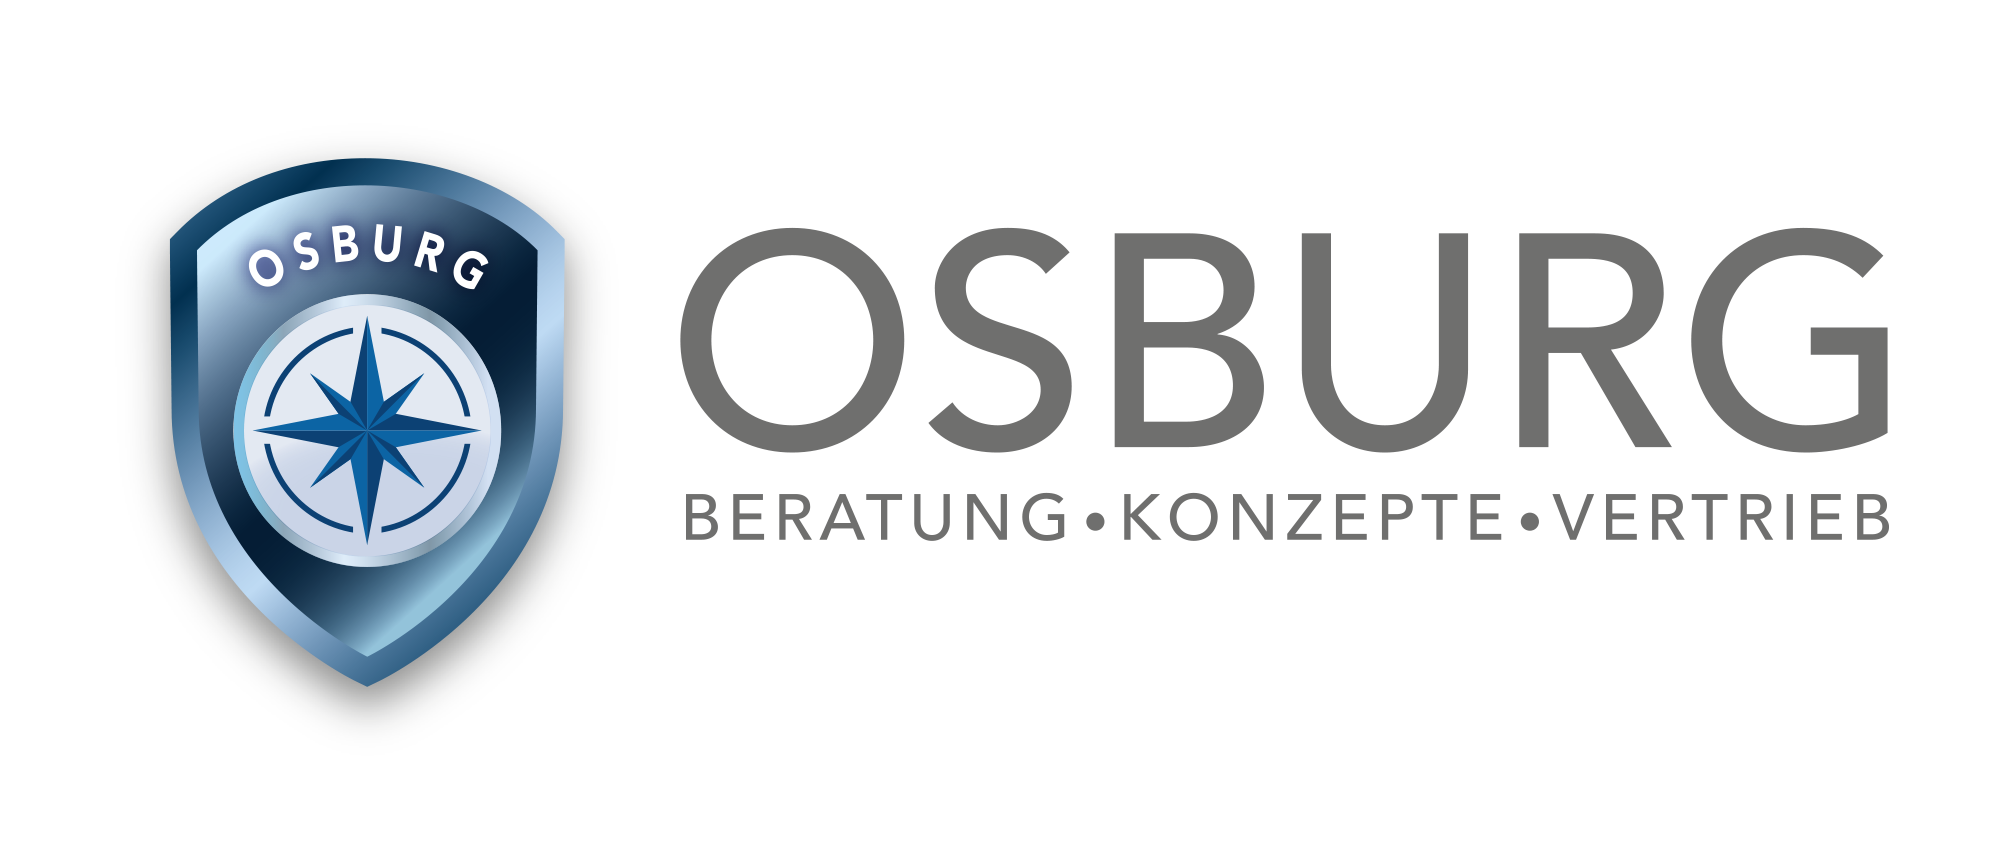 OSBURG – Beratung.Konzepte.Vertrieb – Berlin Mitte